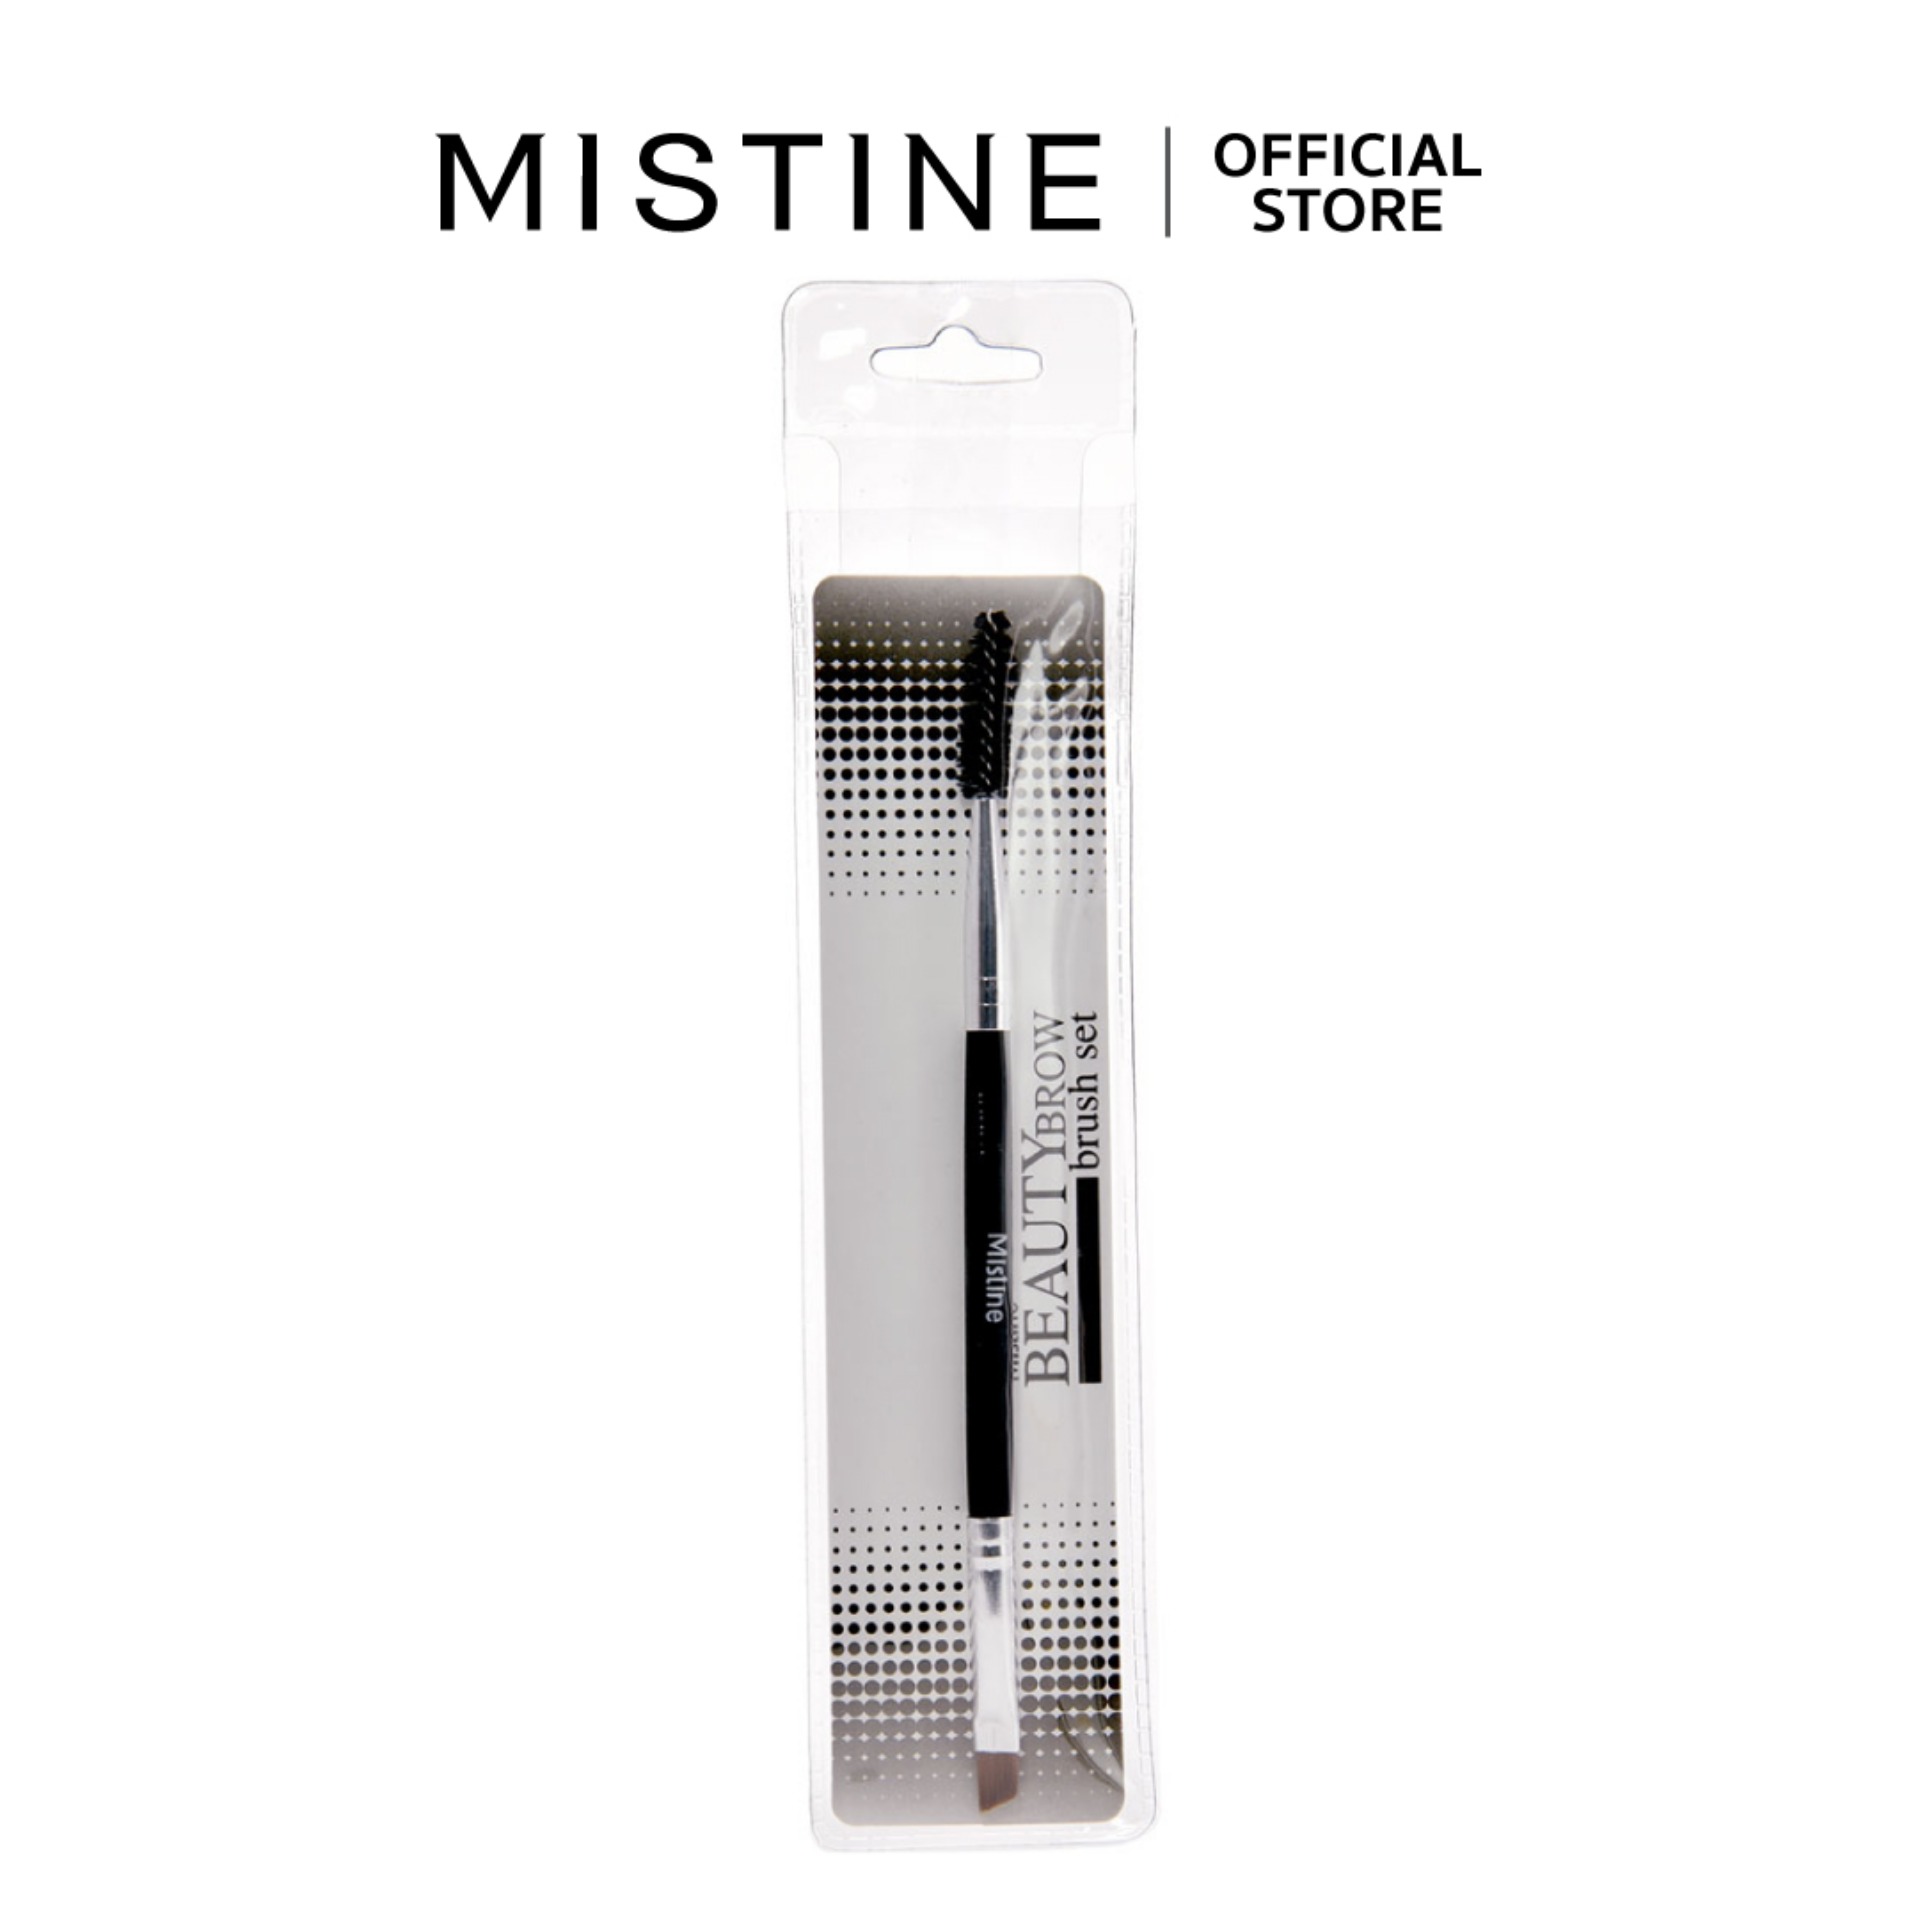 มิสทิน บิวตี้ บราวน์ บรัช เซต Mistine Beauty Brow Brush Set (เครื่องสำอาง,พู่กันเขียวคิ้ว,อุปกรณ์แต่งหน้า)